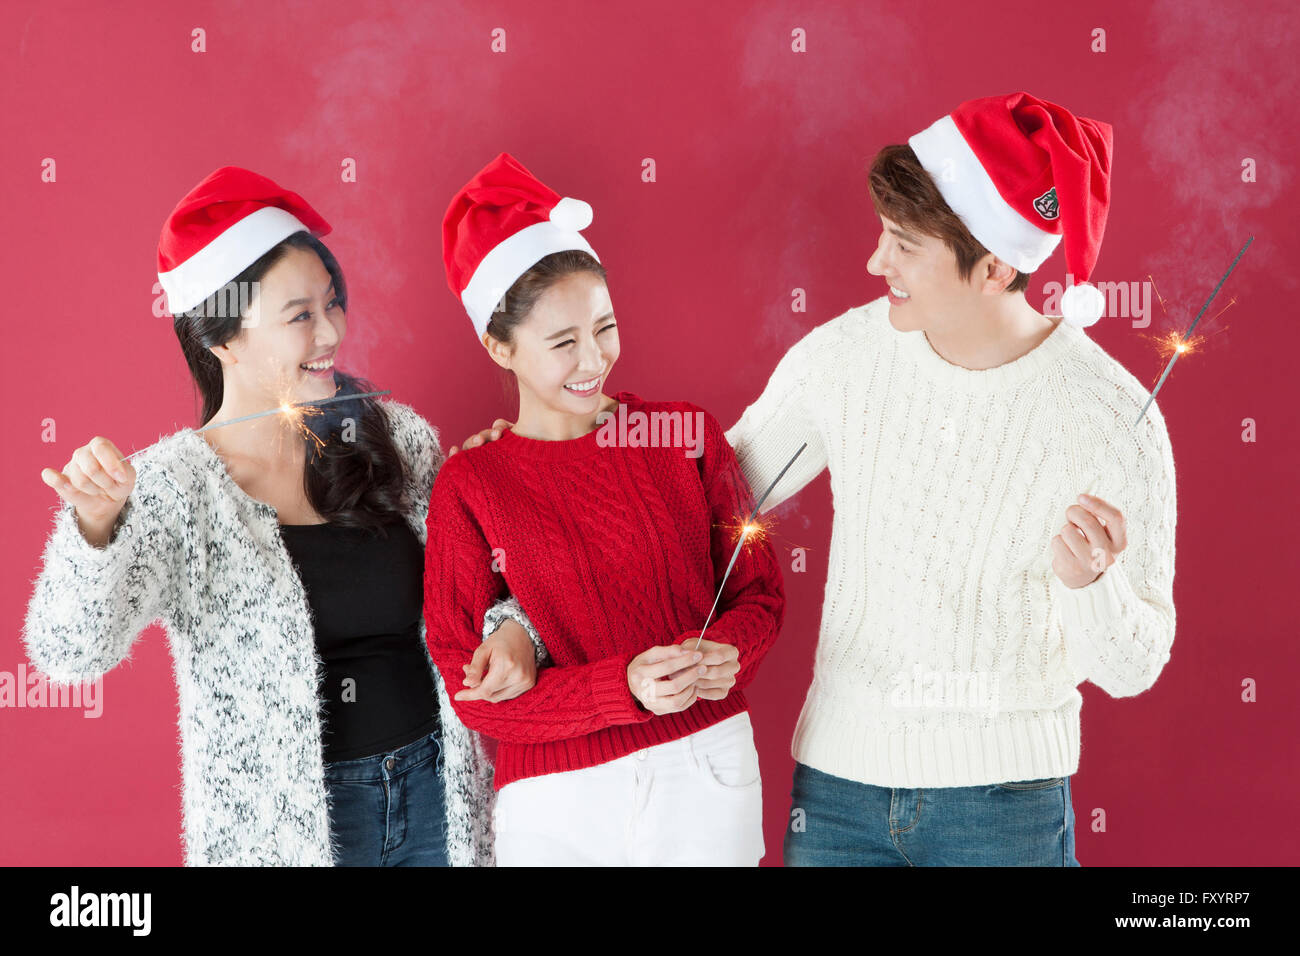 Portrait de trois jeunes smiling people wearing santa hats holding d'artifice face à face Banque D'Images